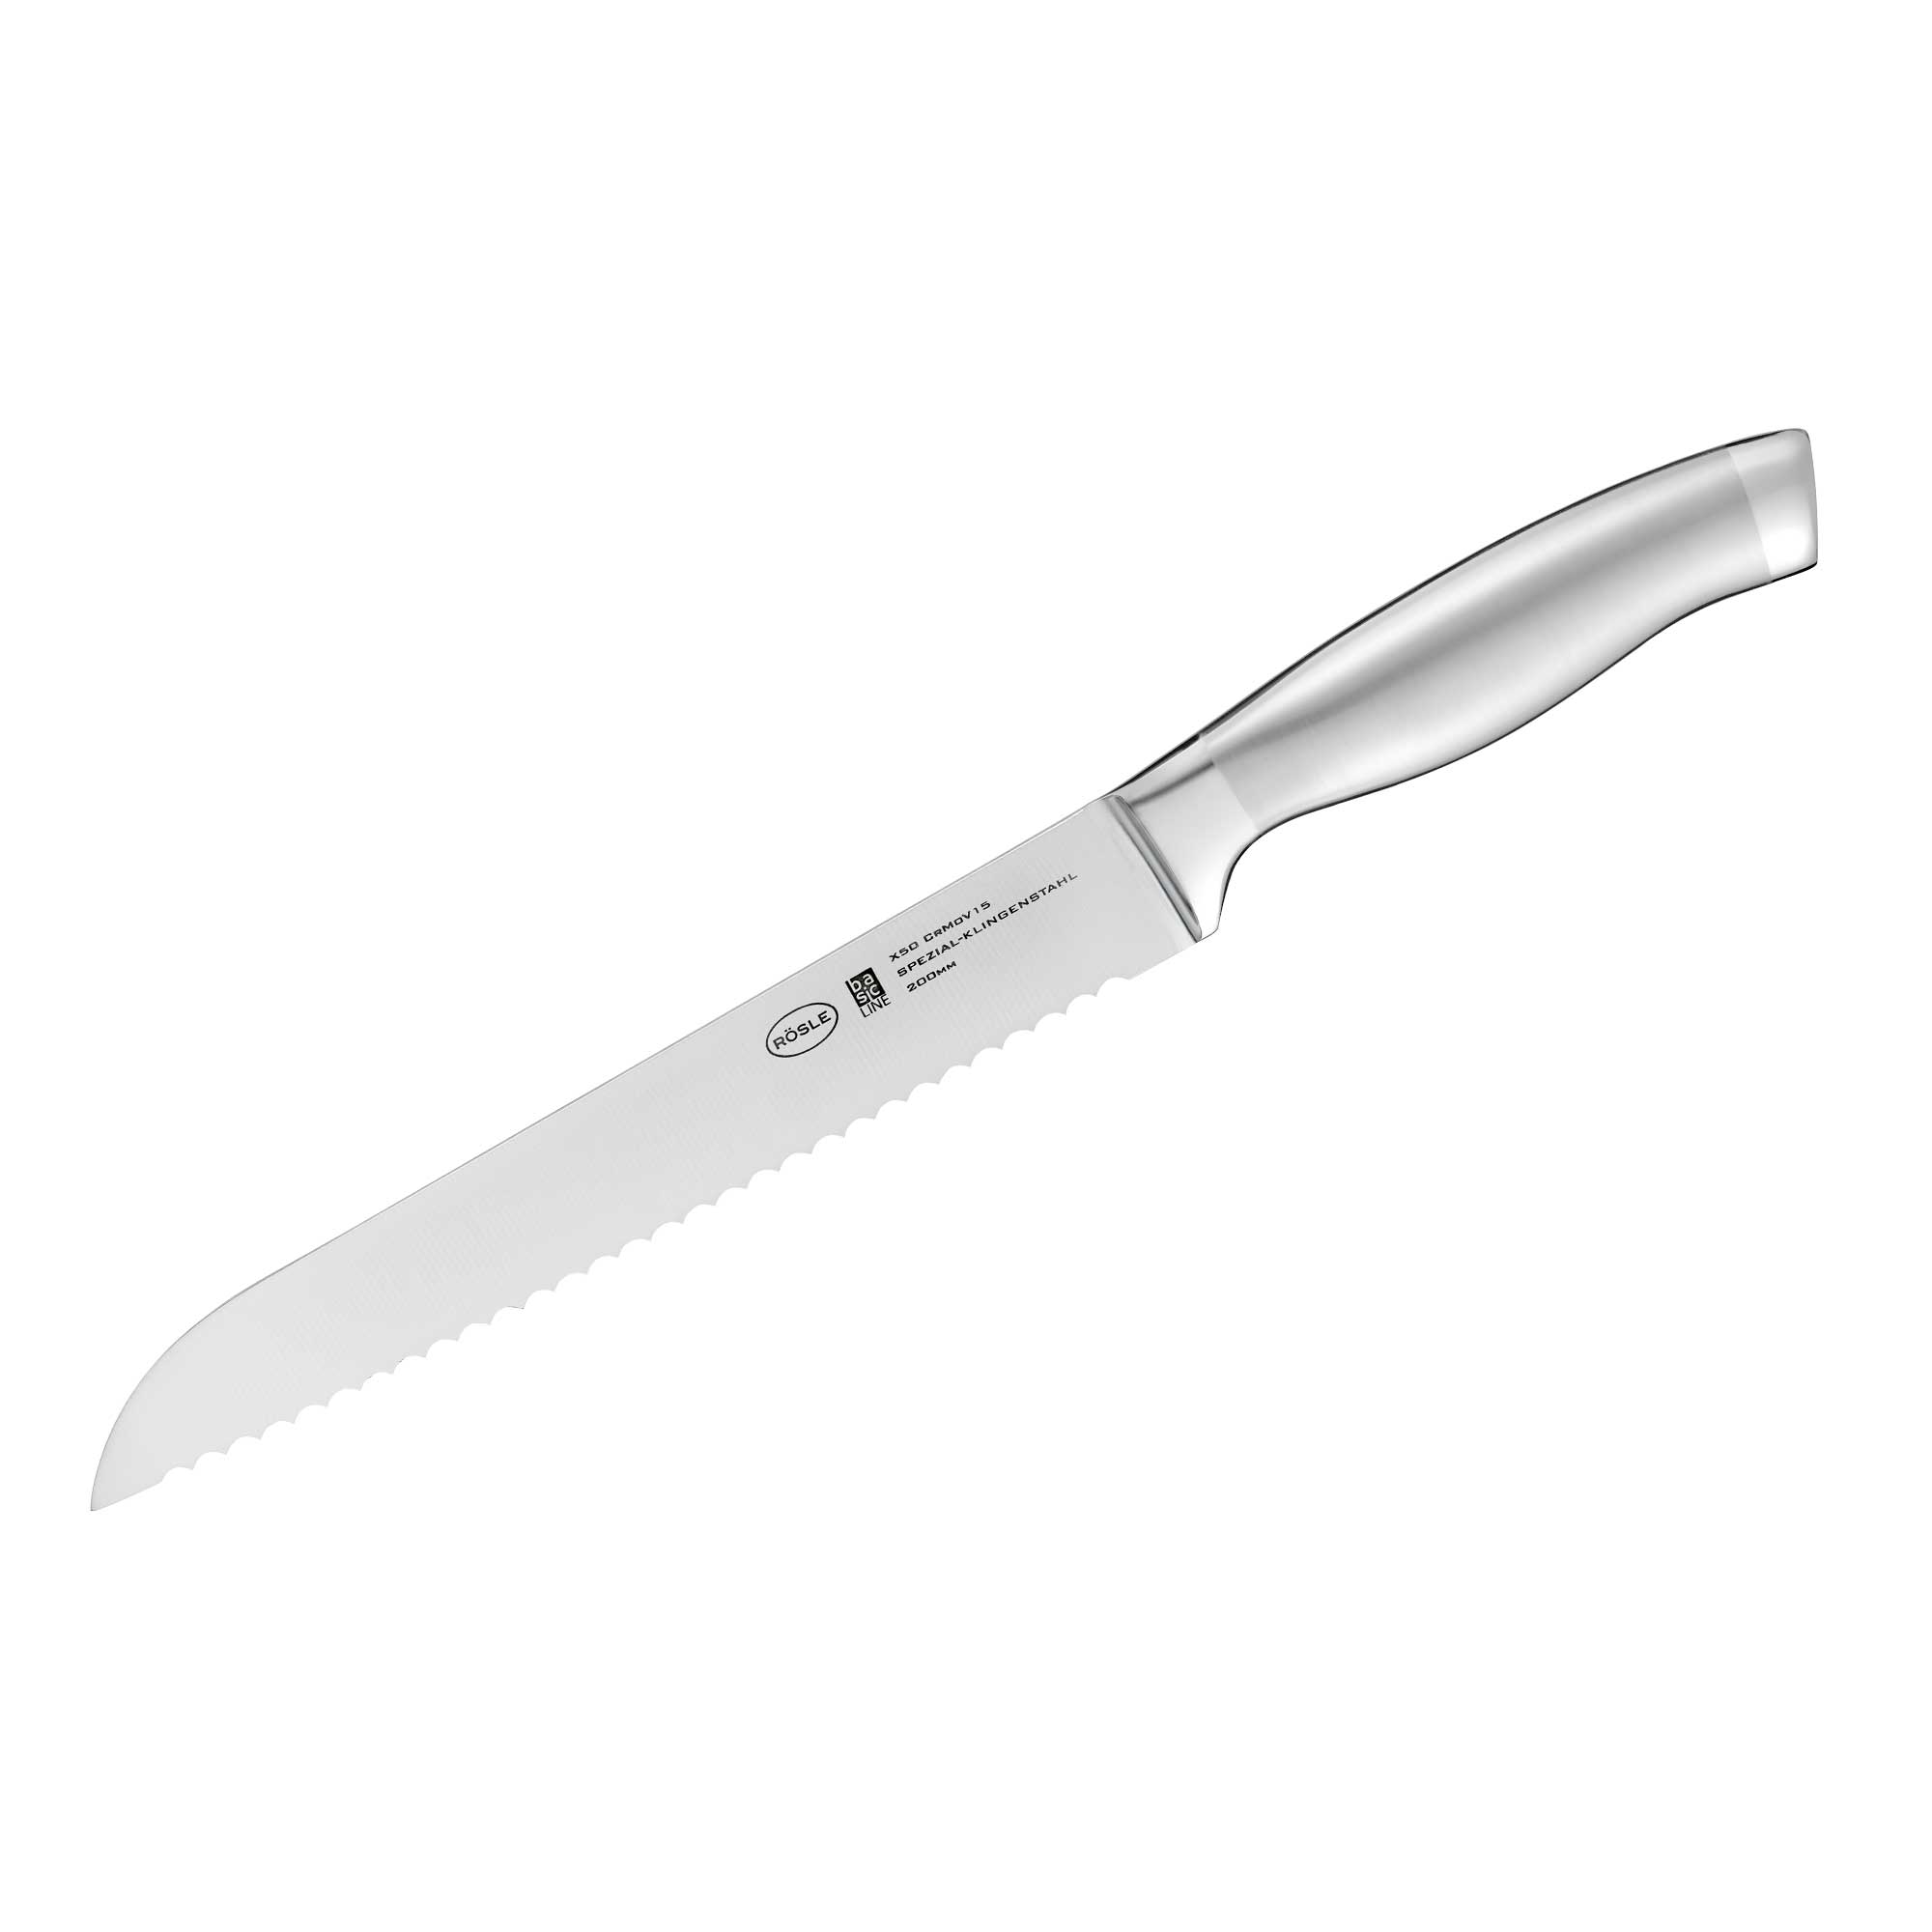 Bread knife "Basic Line" 20 cm